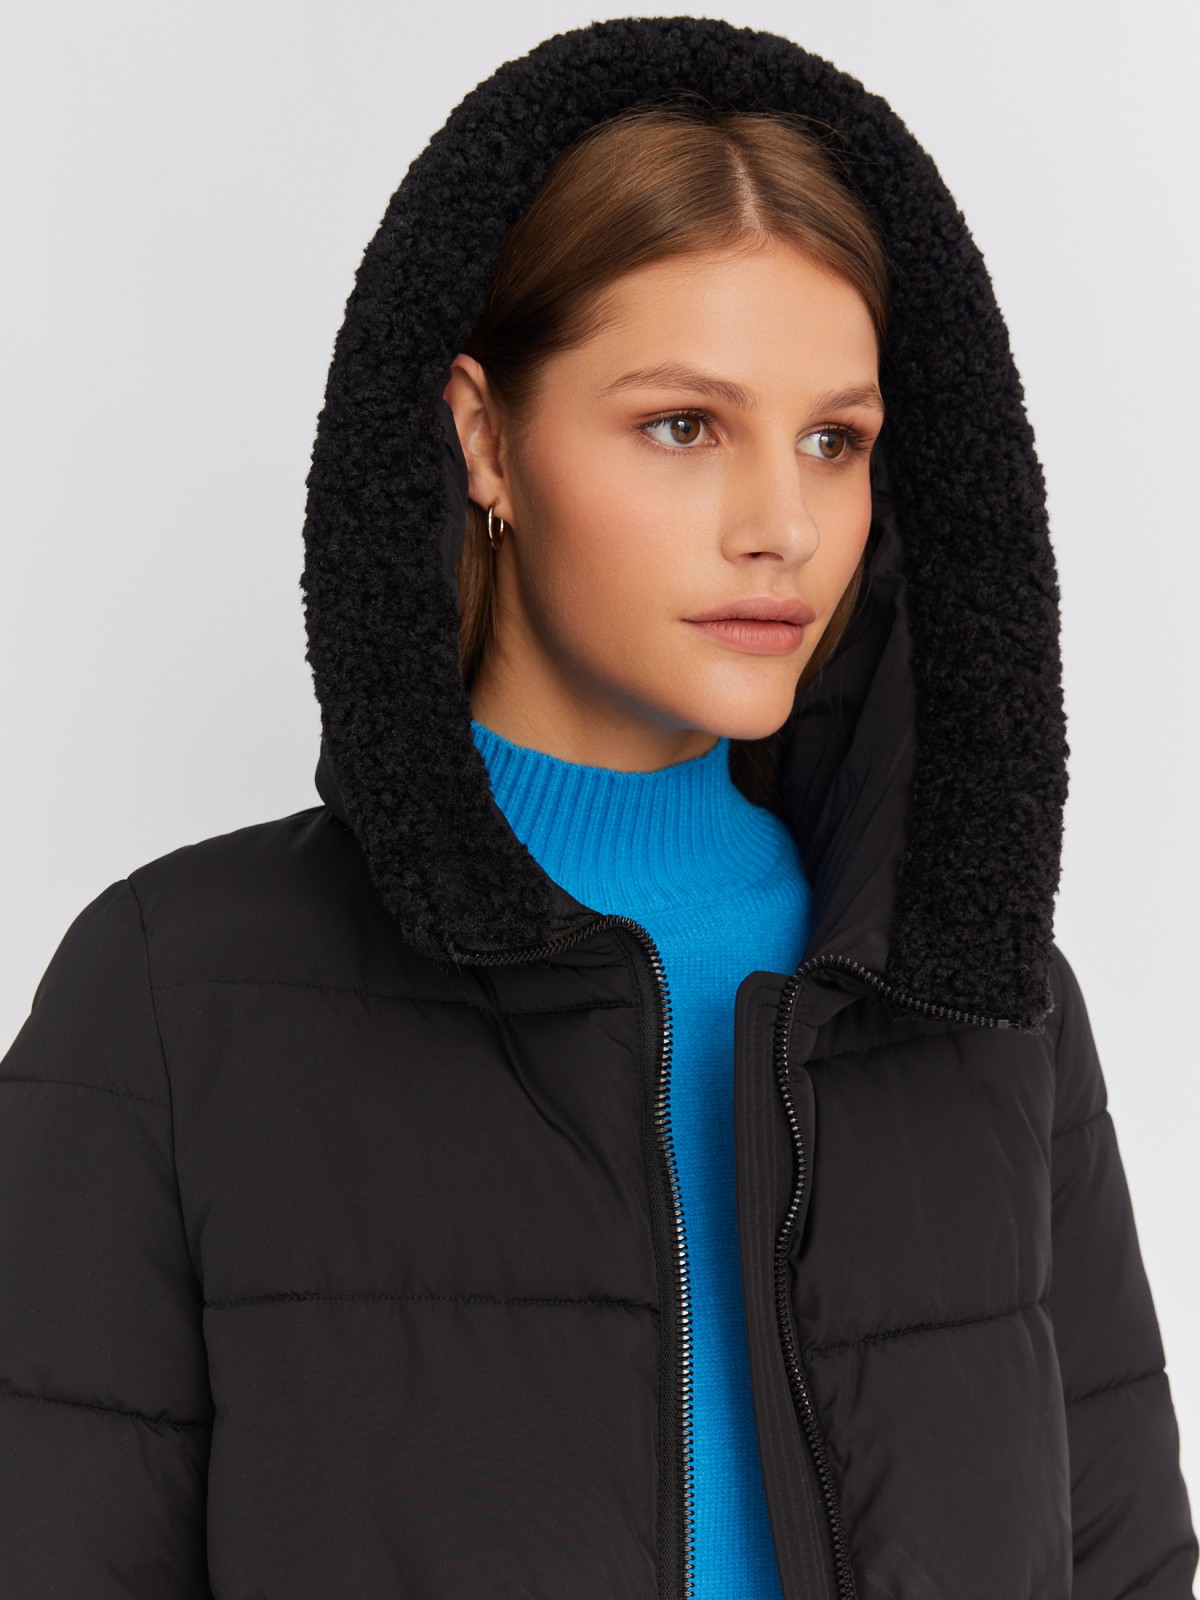 Тёплая куртка-пальто с капюшоном и отделкой из экомеха